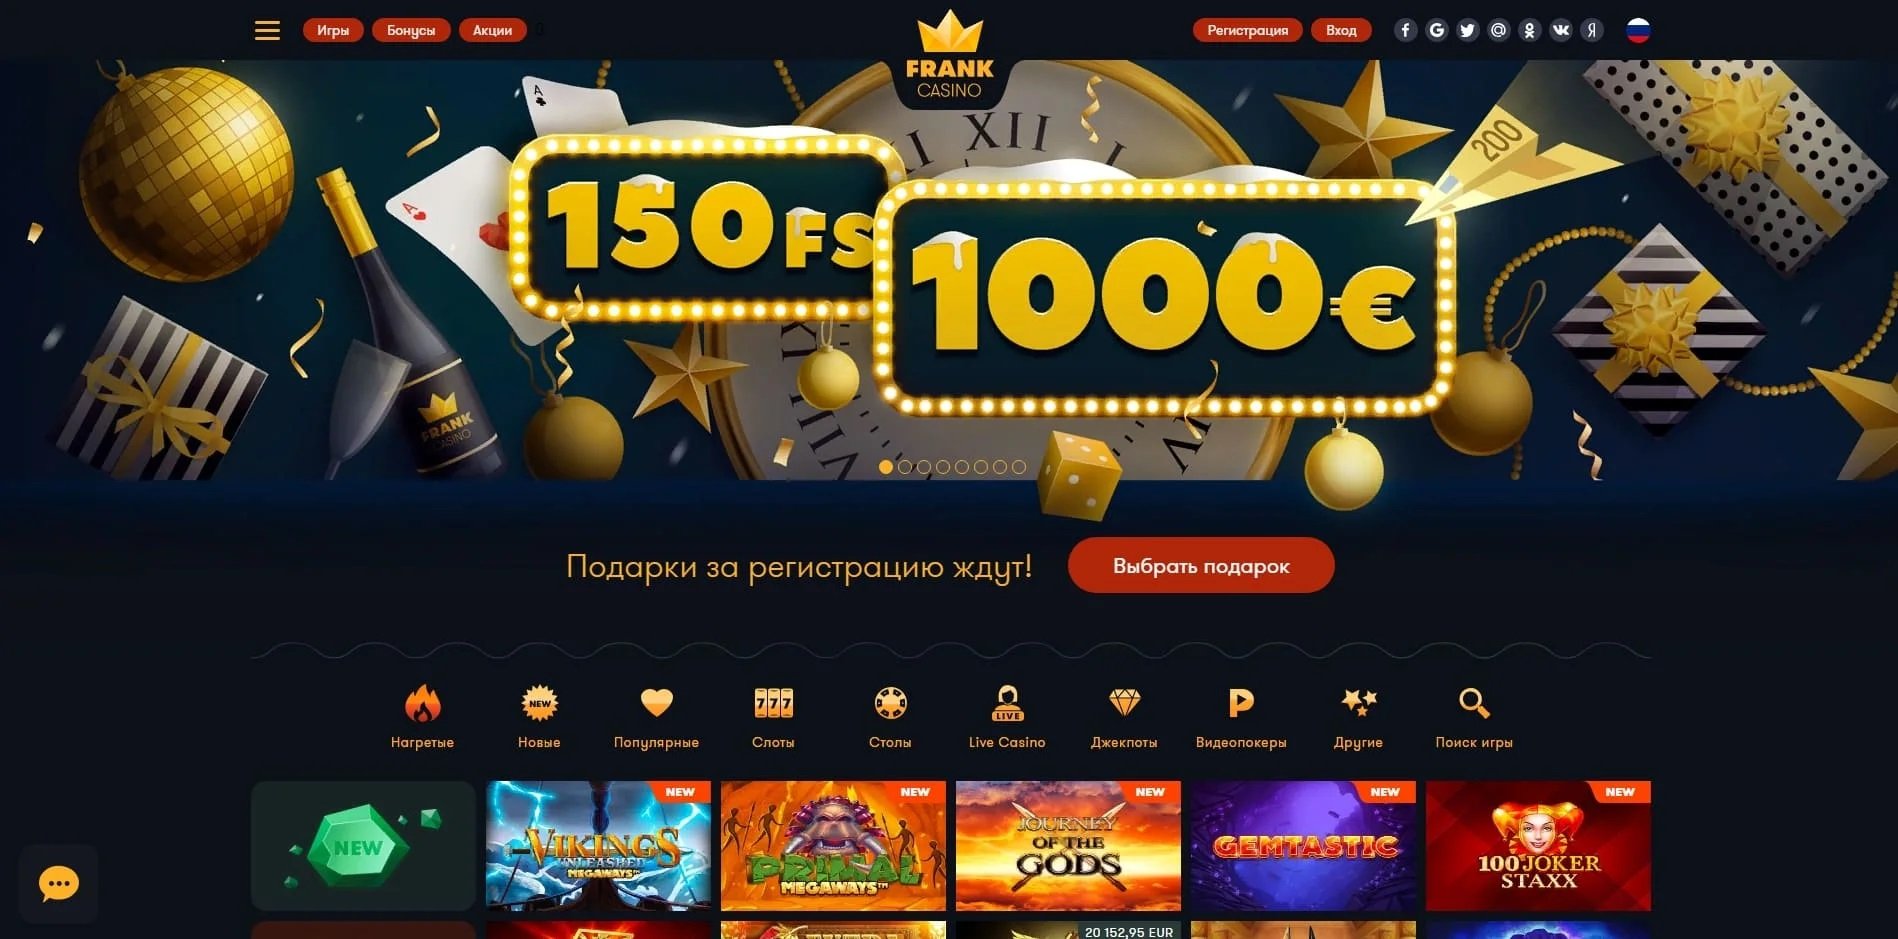 франк казино играть онлайн бесплатно без регистрации